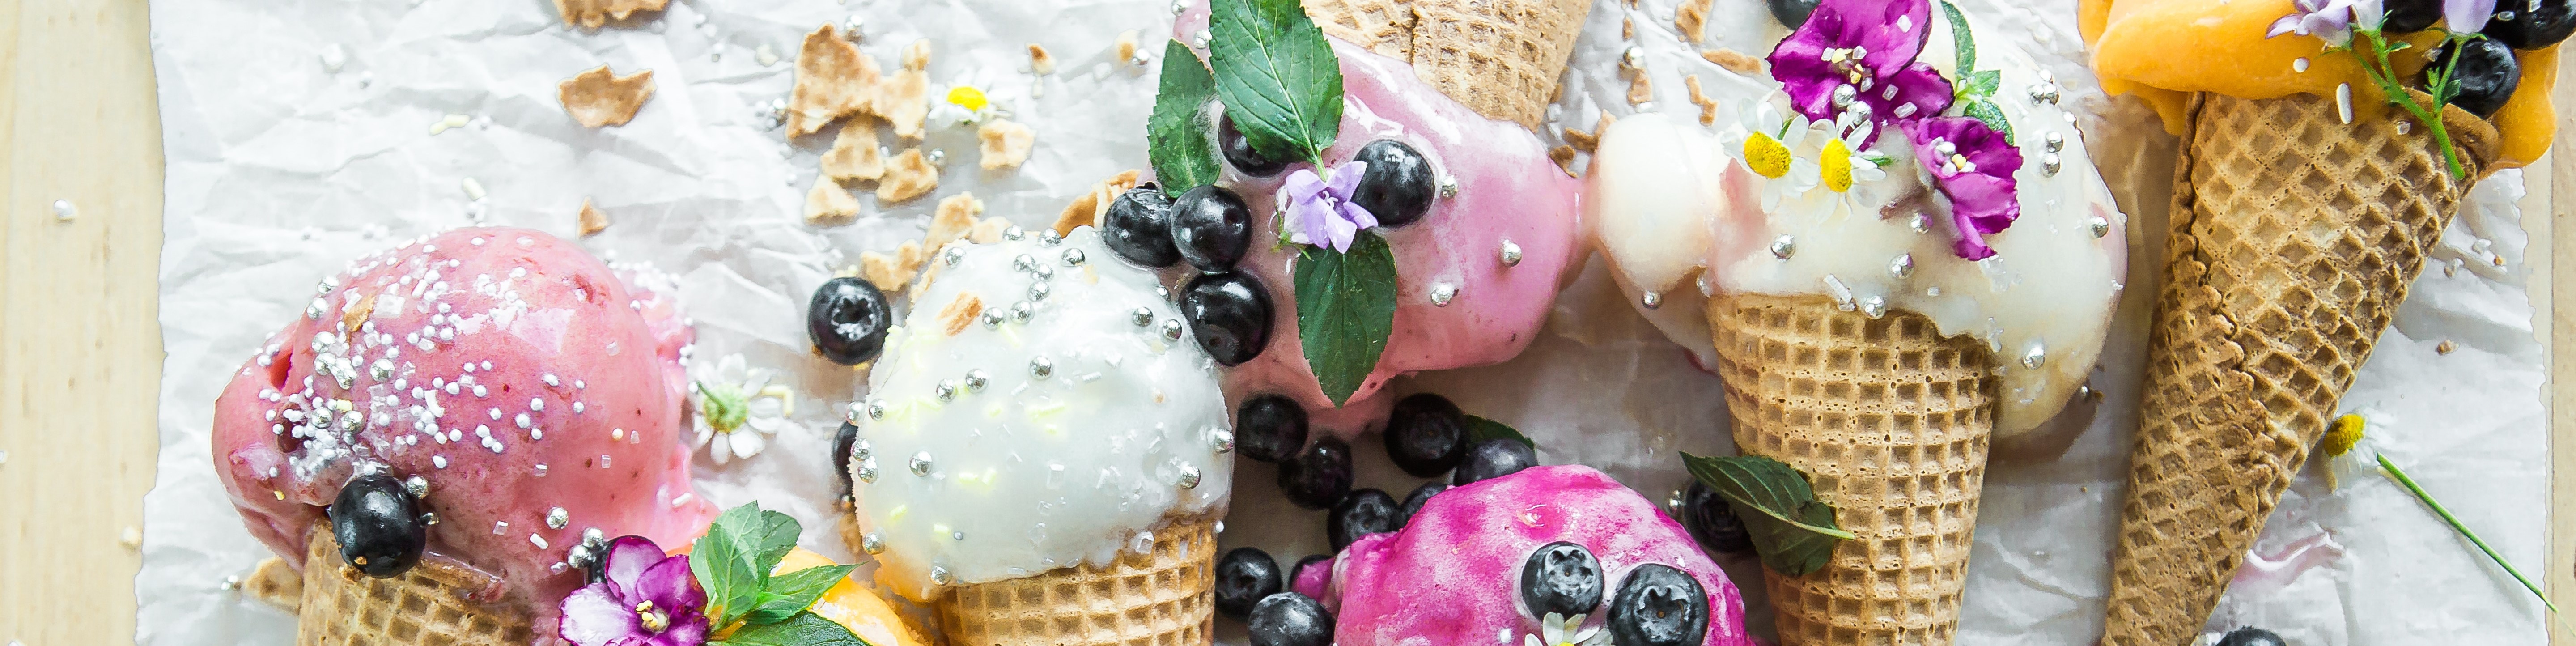 ice cream fruit blueberries